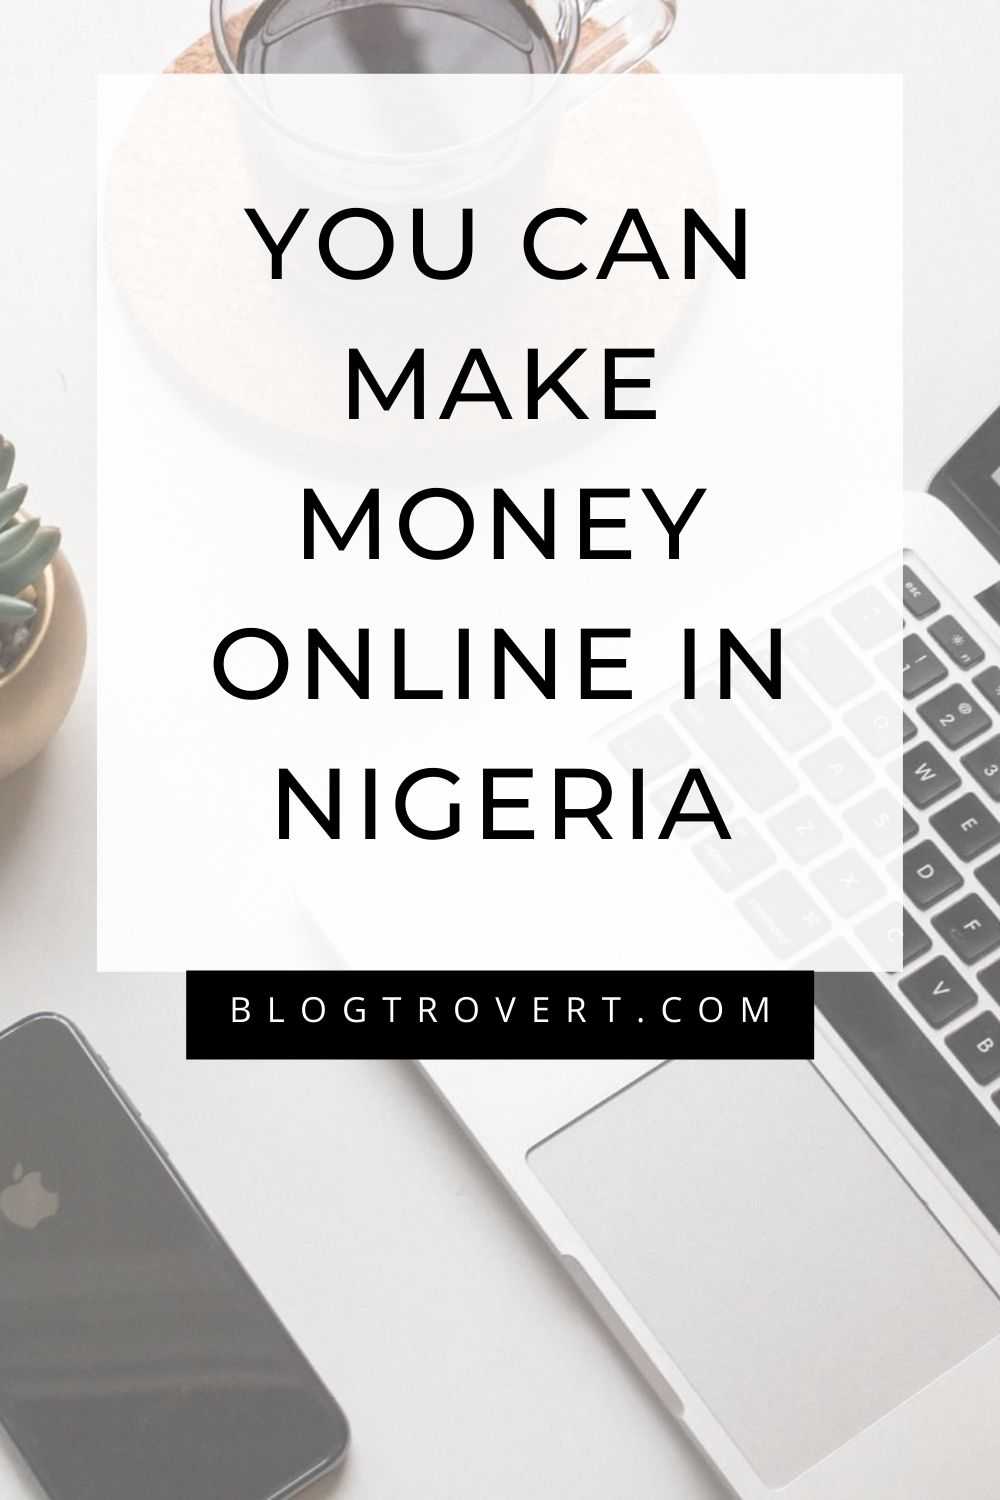 10 Reals ways to make money Online in Nigeria - 2022 3